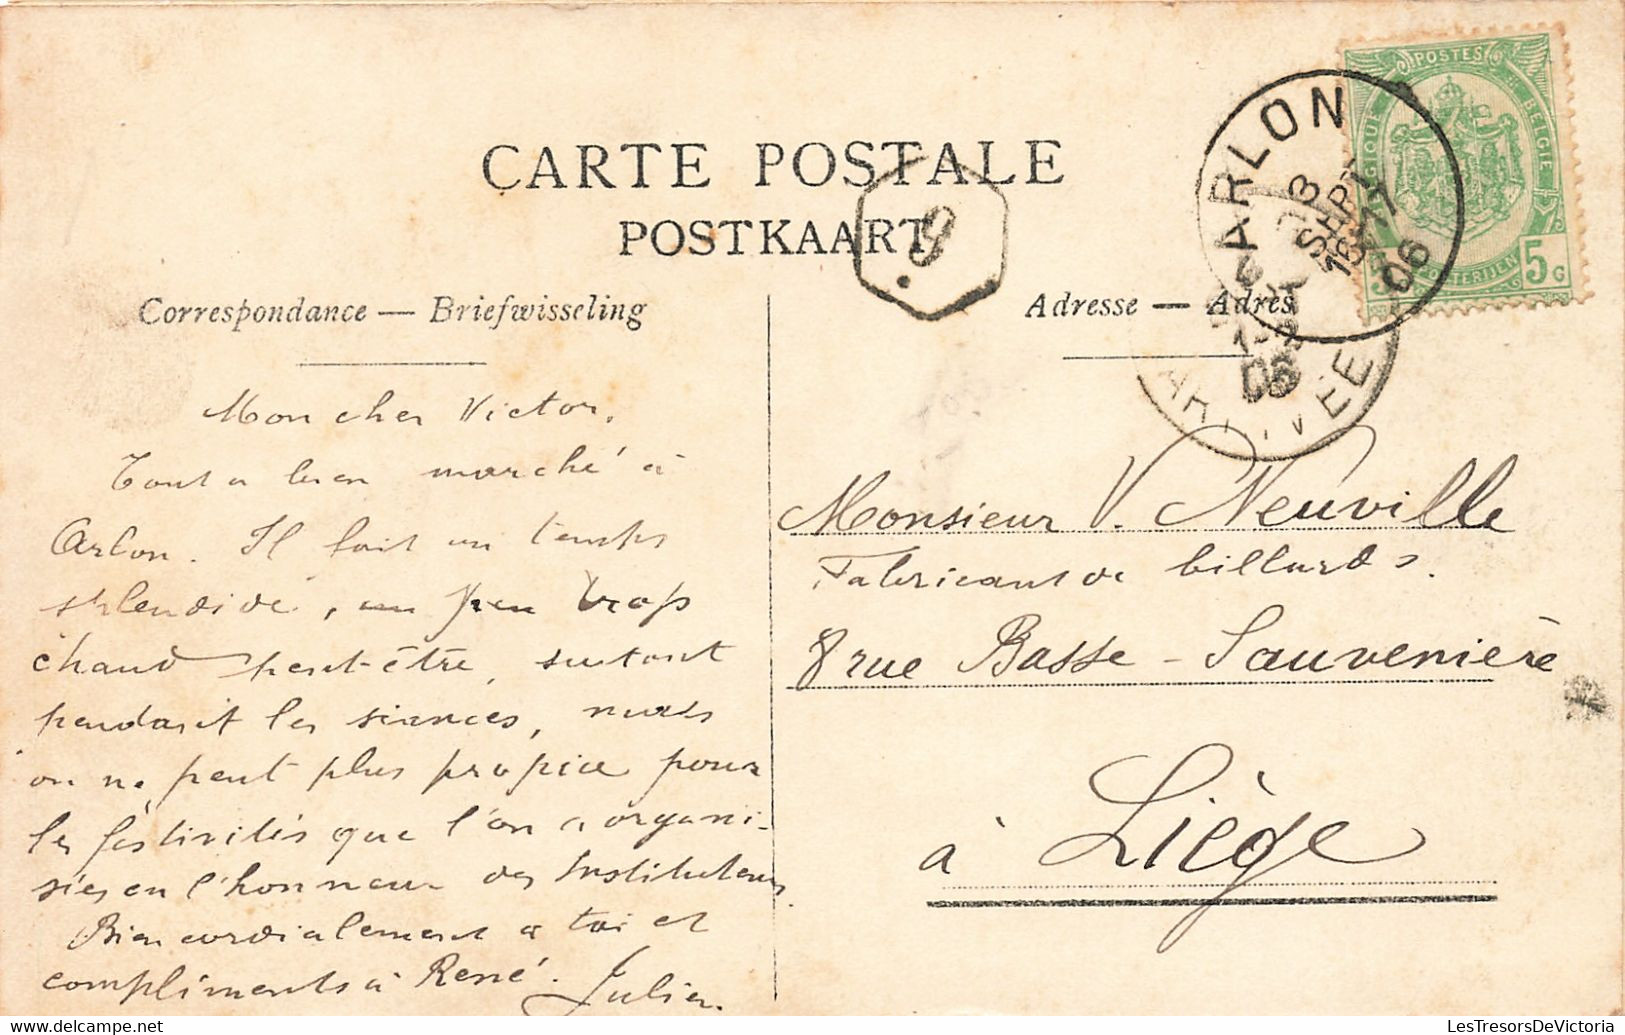 Belgique - Arlon - La Calvaire - Edit. G.H. - Animé - Oblitéré Arlon 1906 - Serrurier - Carte Postale Ancienne - Arlon